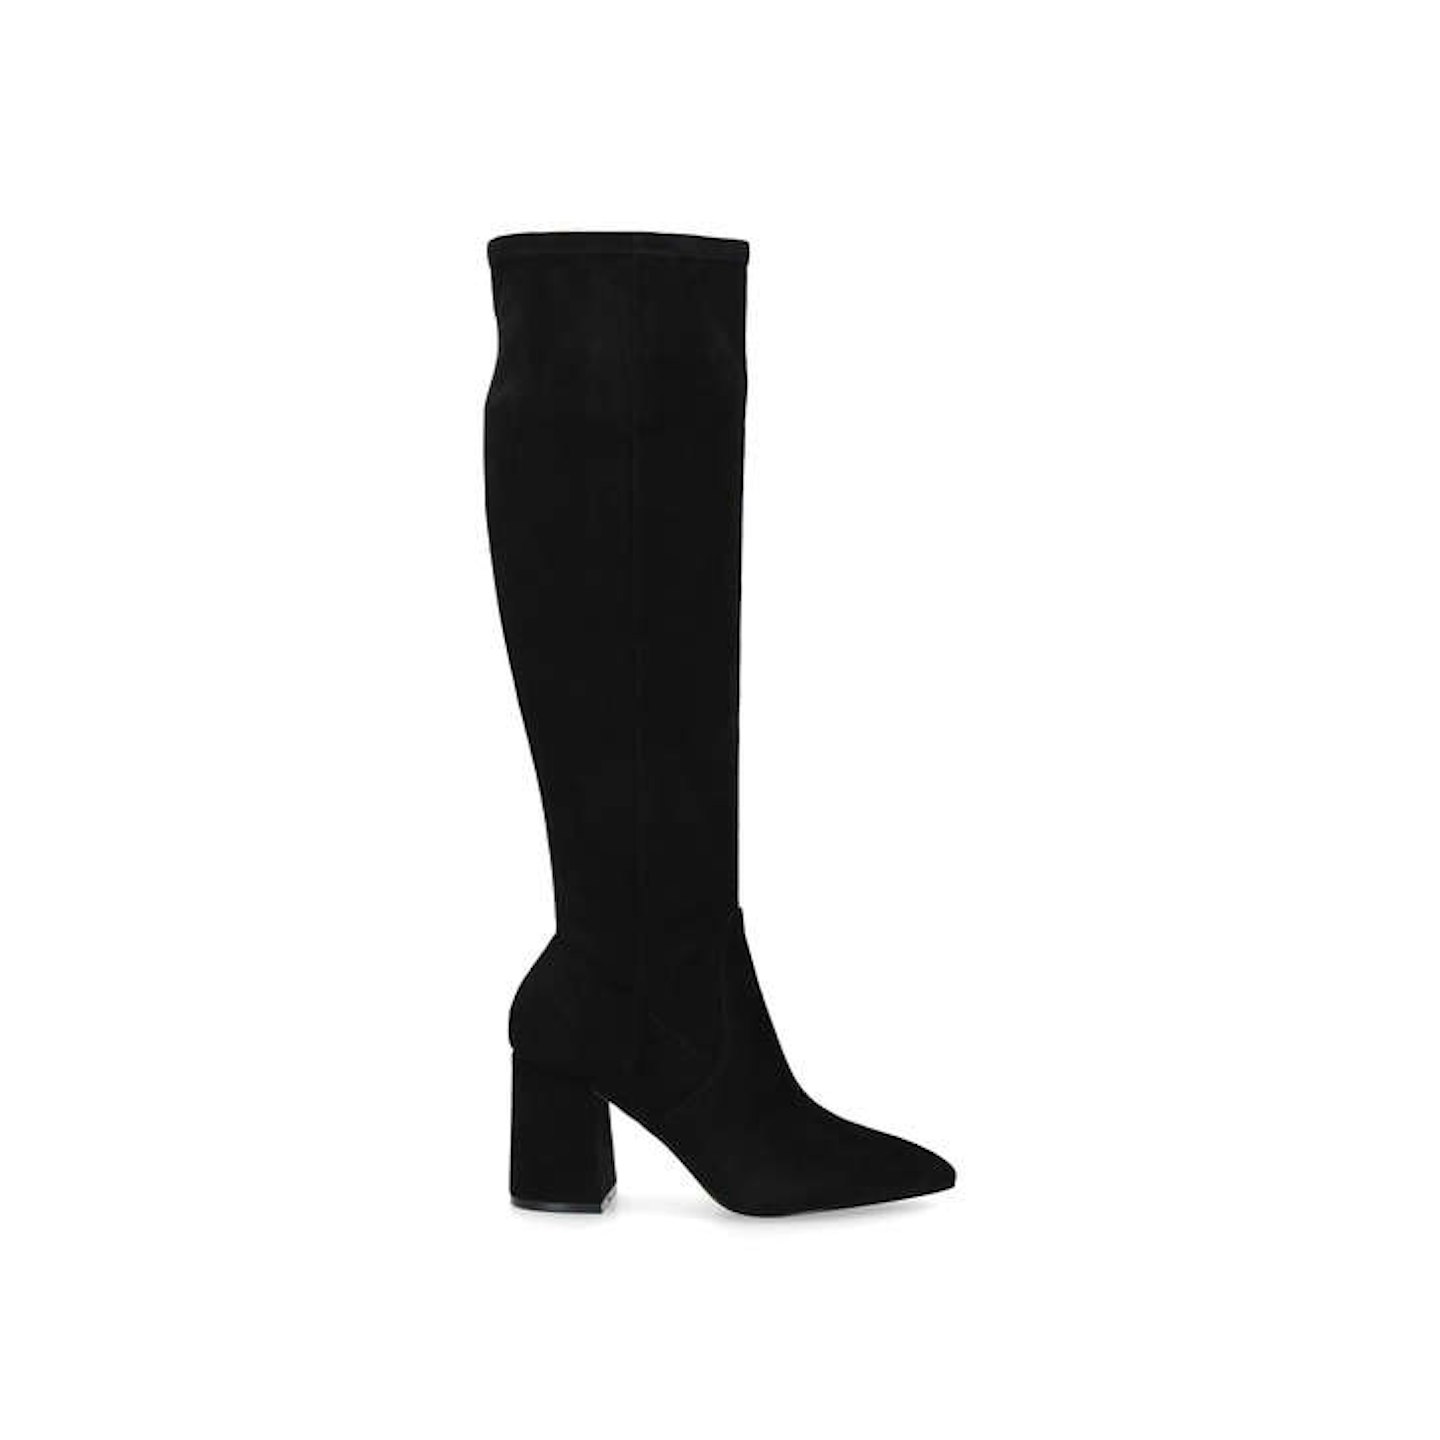 Carvela, Black Block Heel Boots, WERE £189 NOW £79